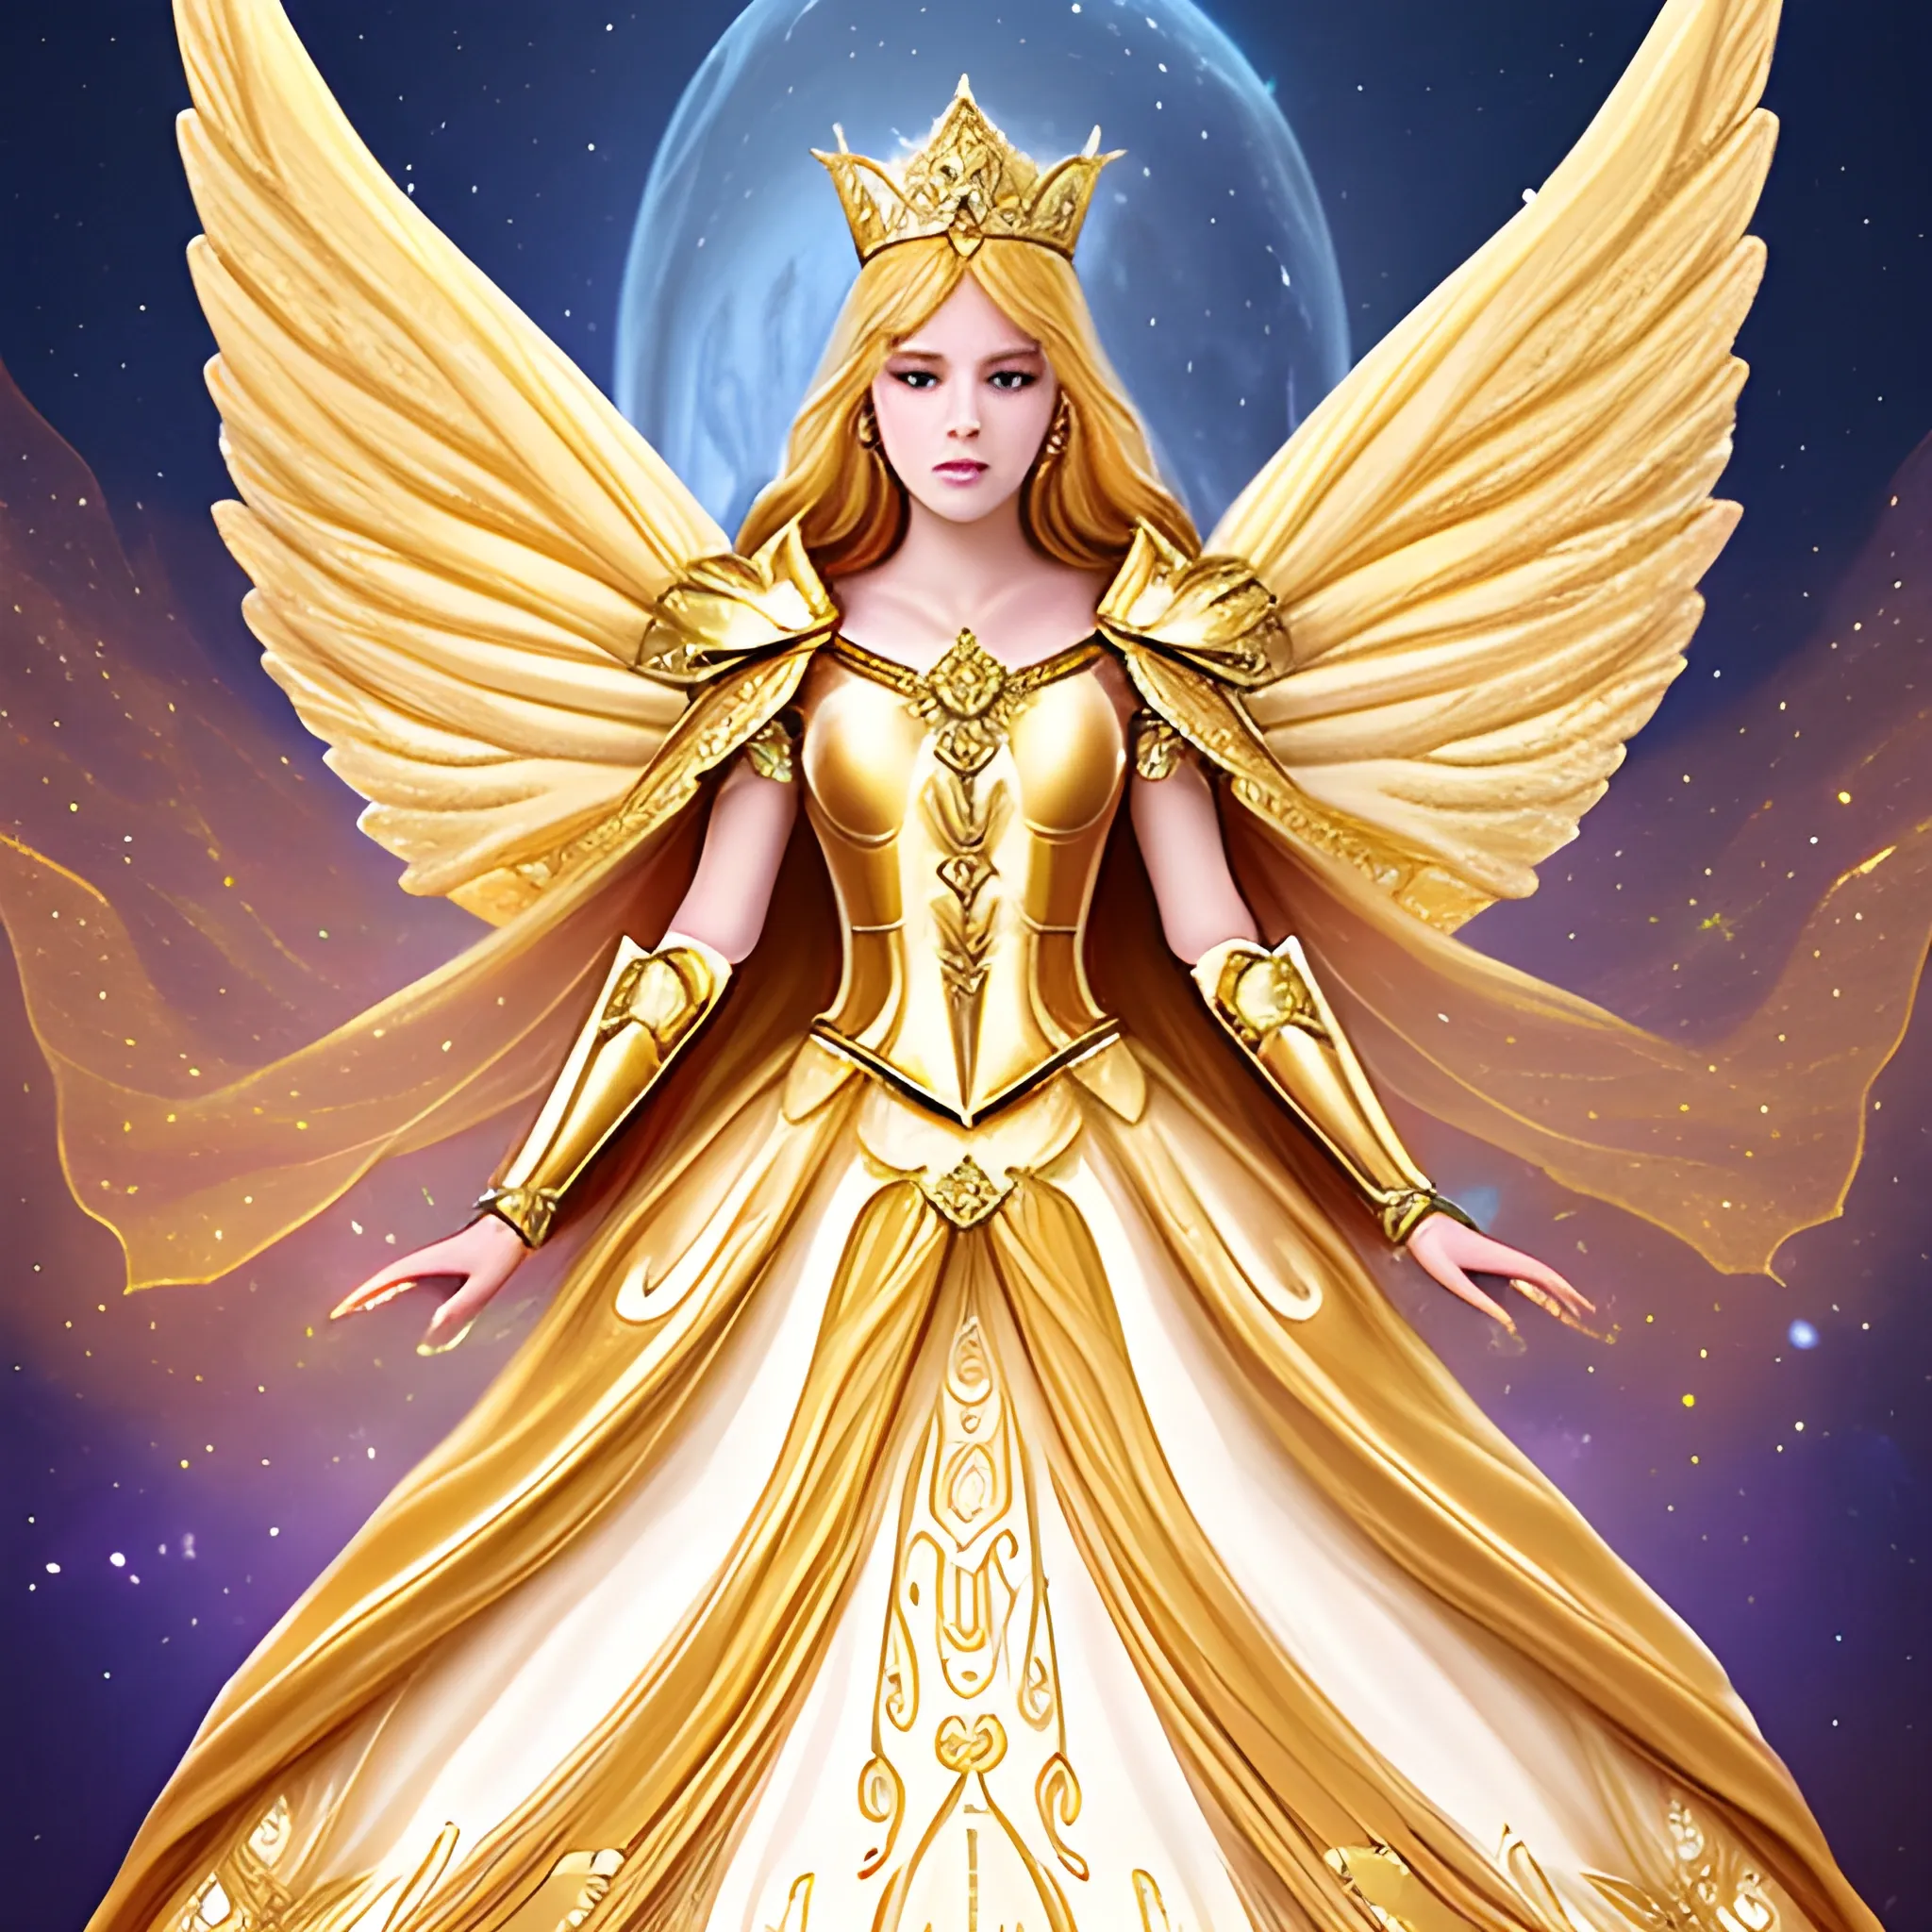 Golden galaxy goddess Angel fairy Queen princess dream wedding dress with cape and high collar warrior goddess armor Bohemian